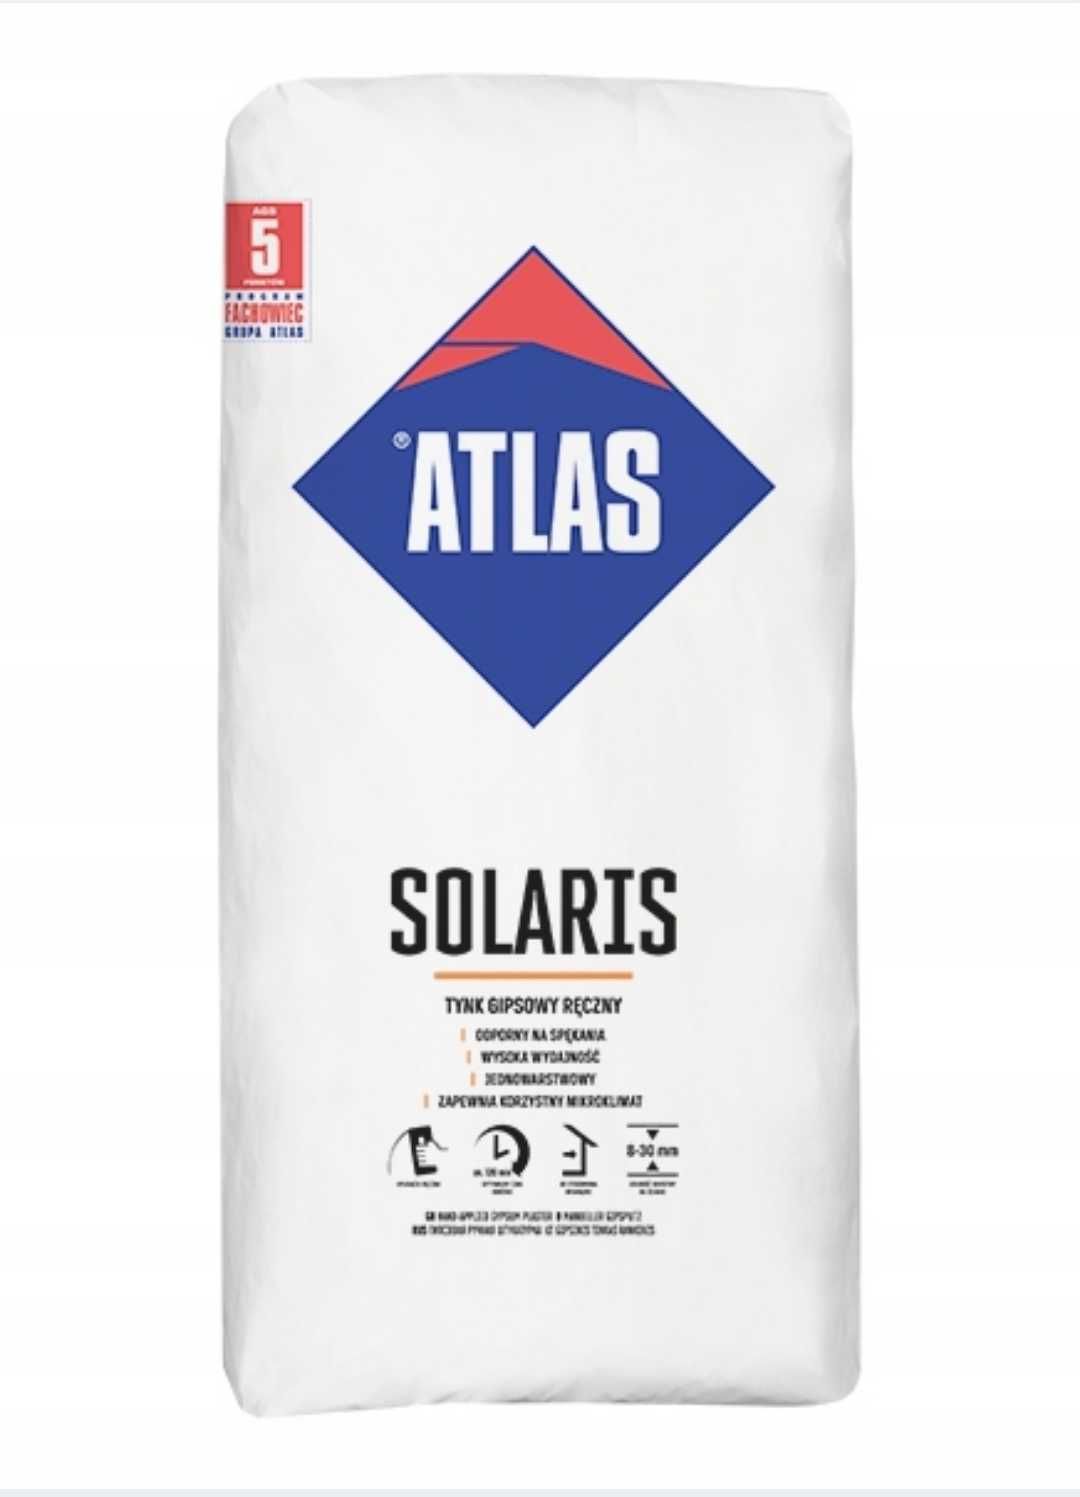 Atlas solaris tynk gipsowy ręczny OKAZJA